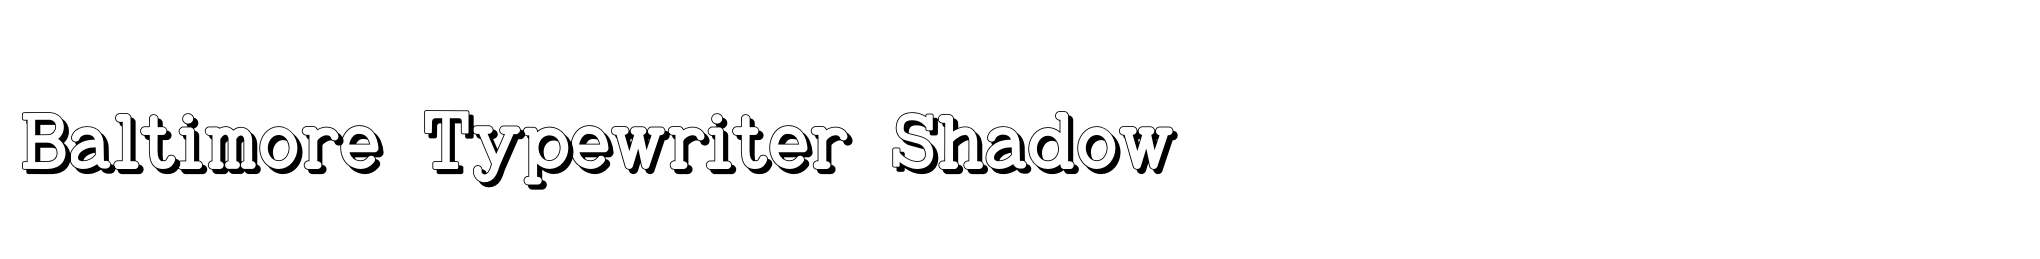 Baltimore Typewriter Shadow image